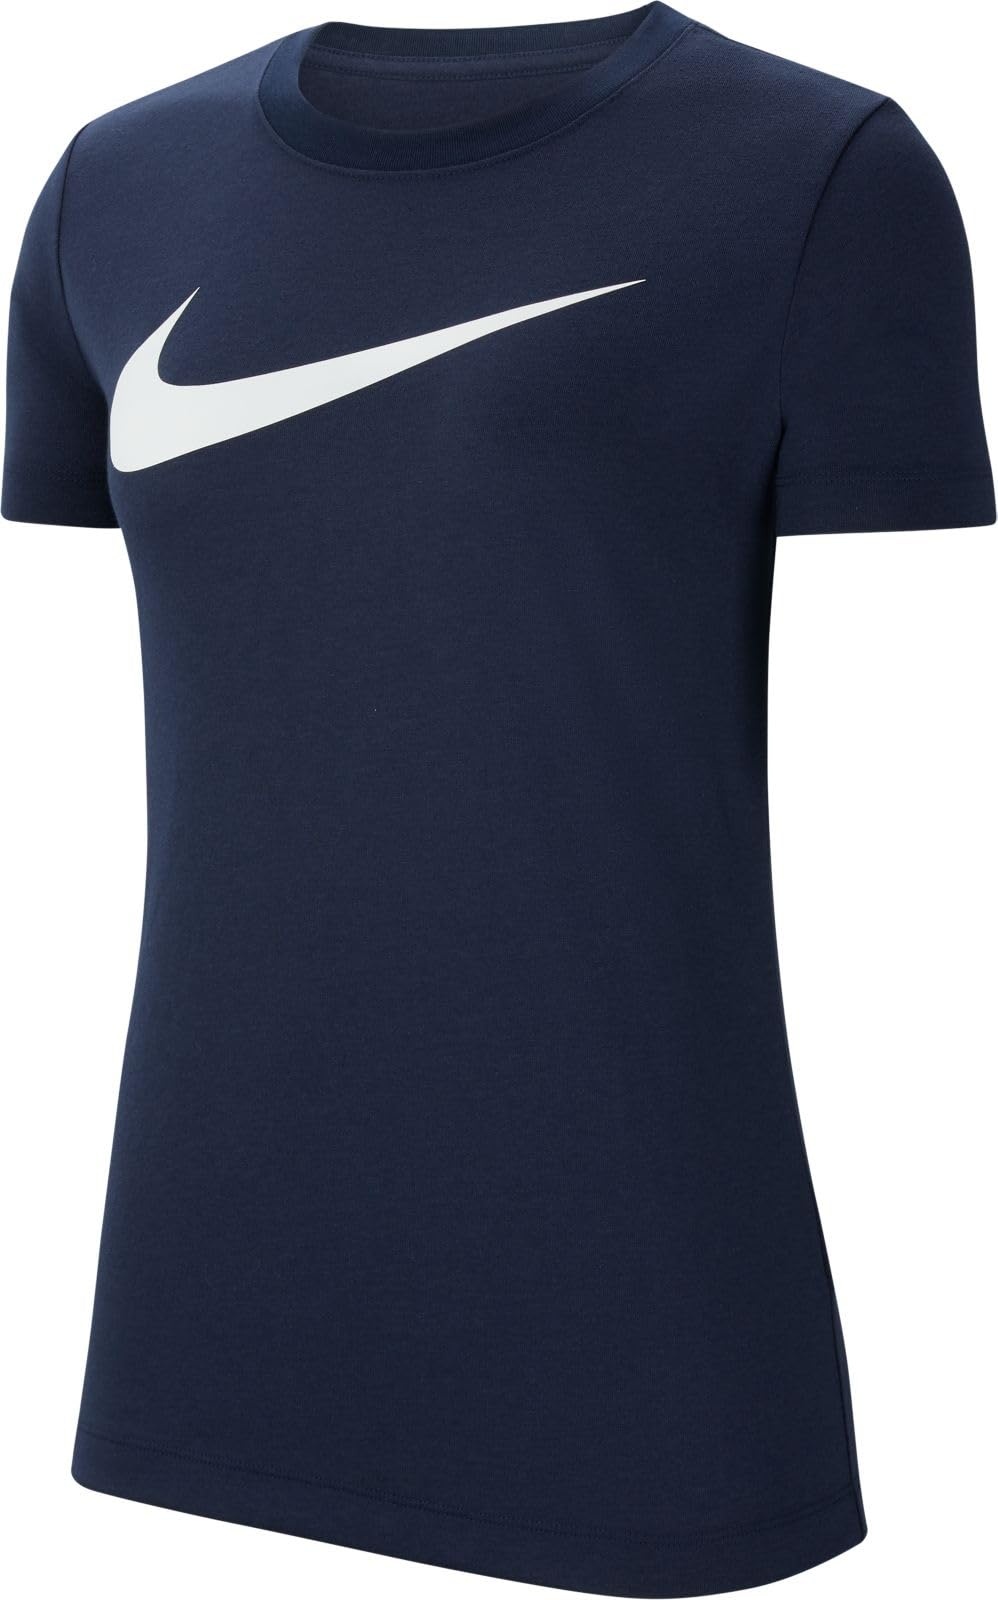 Nike Damen Team Club 20 Tee voor dames T Shirt, Obsidian/White, L EU